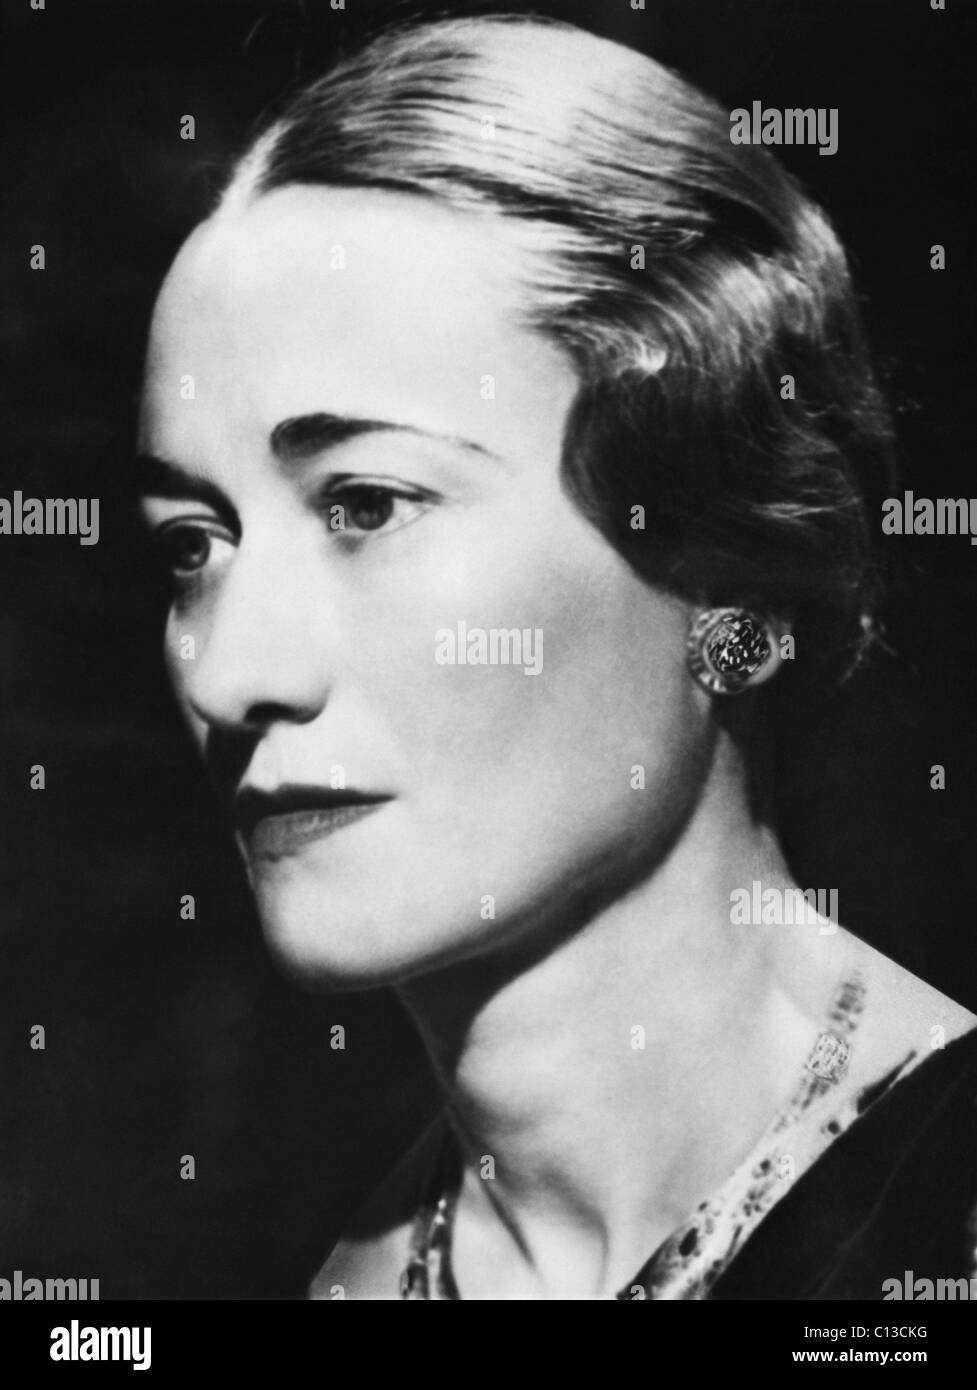 La duchessa di Windsor Wallis Simpson, risalente alla fine degli anni trenta. Foto Stock